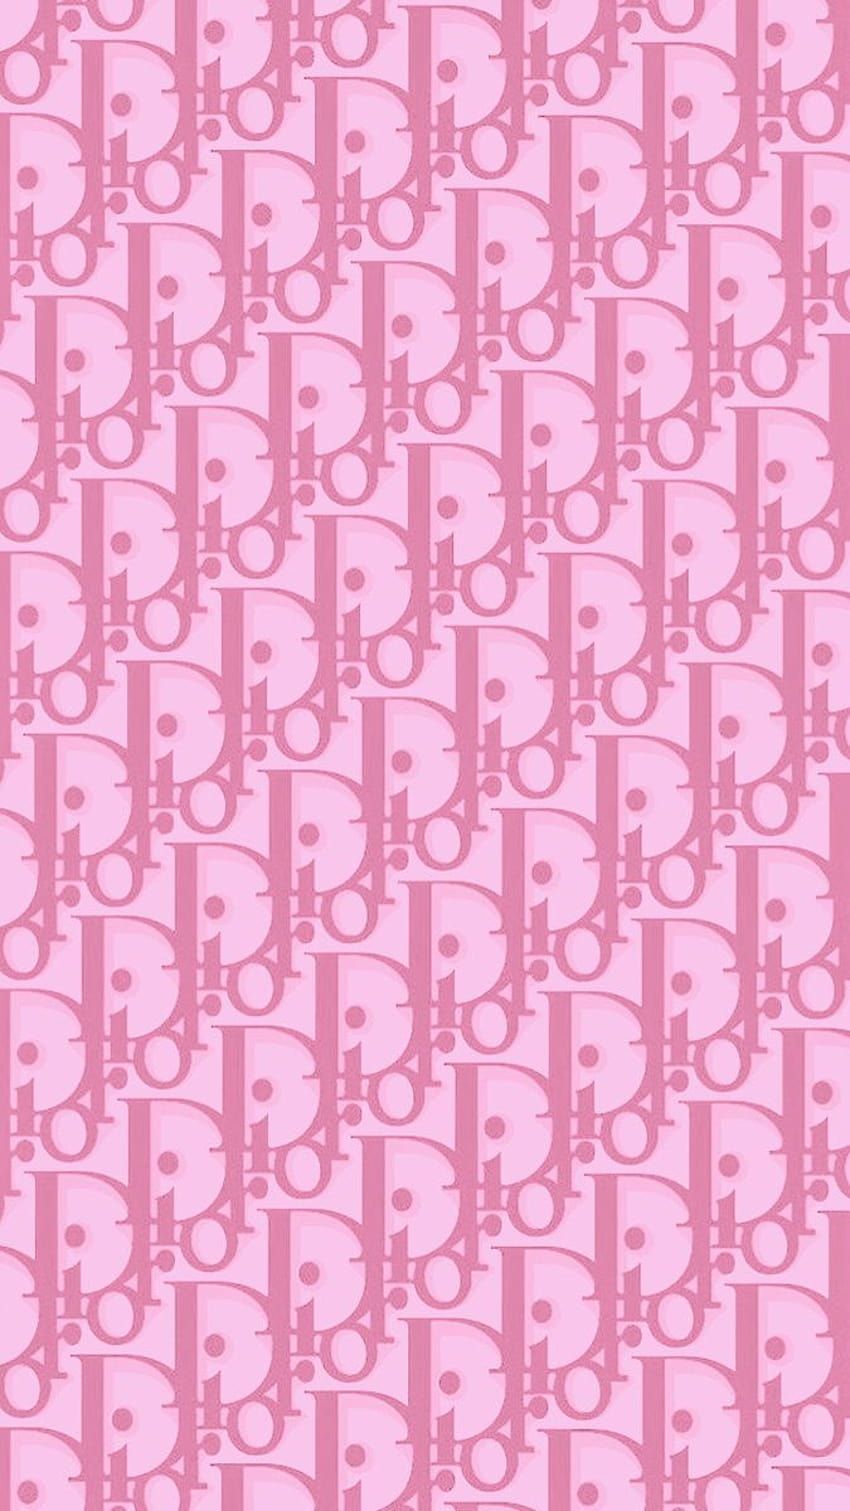 Dior Monogram, aesthetic dior HD phone wallpaper